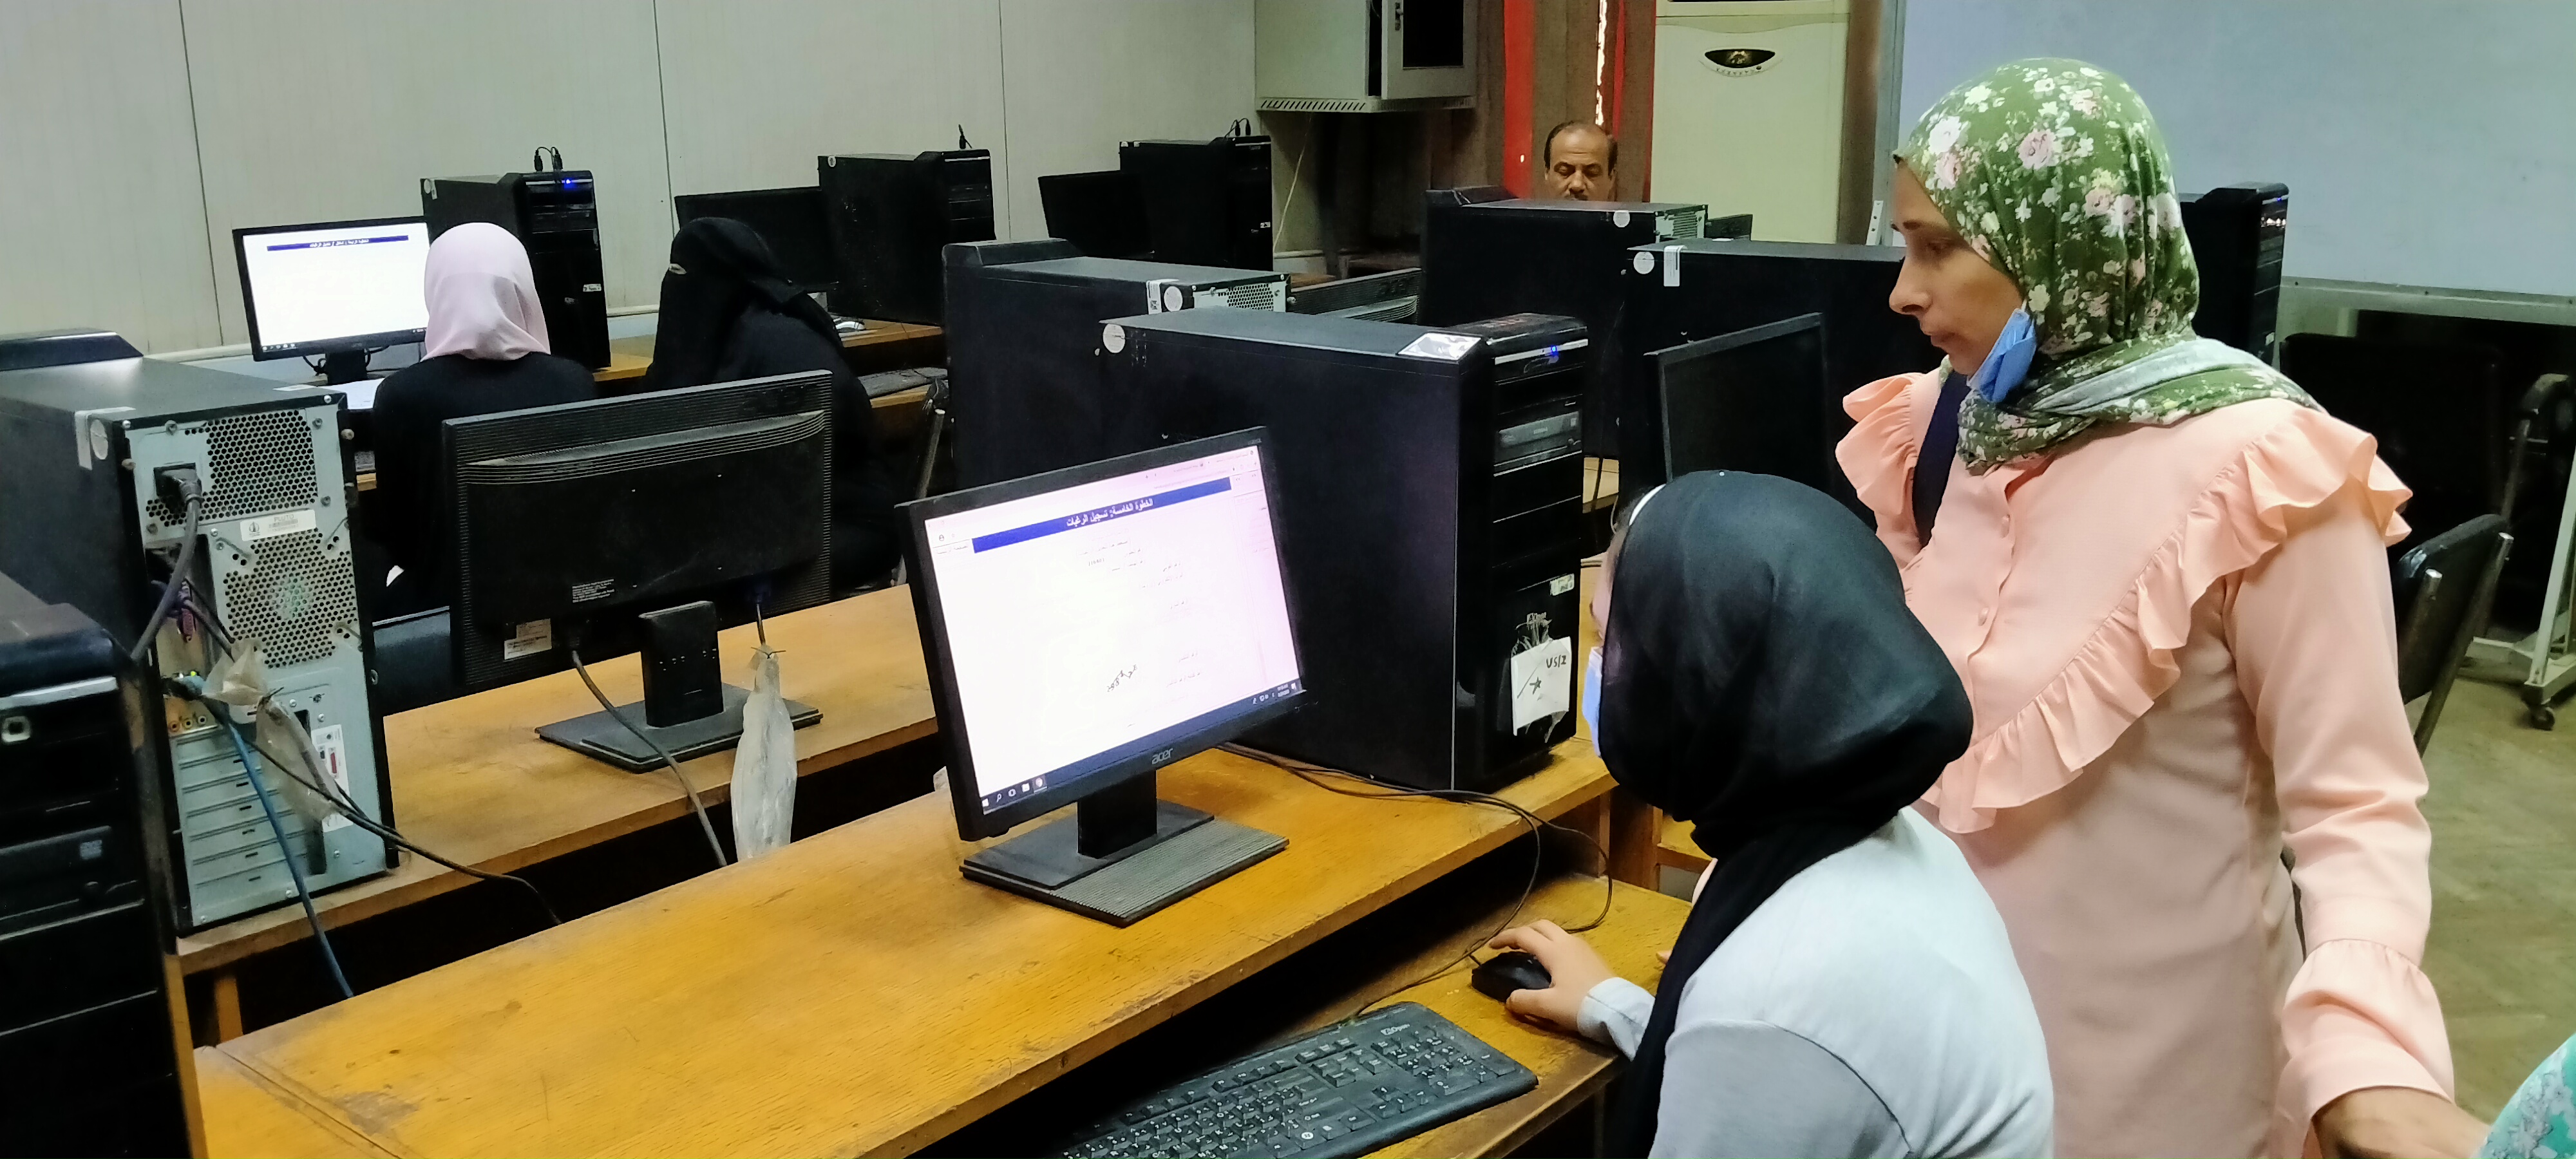 توافد طلاب المرحلة الأولى على معامل تنسيق هندسة القاهرة لتسجيل الرغبات  (4)